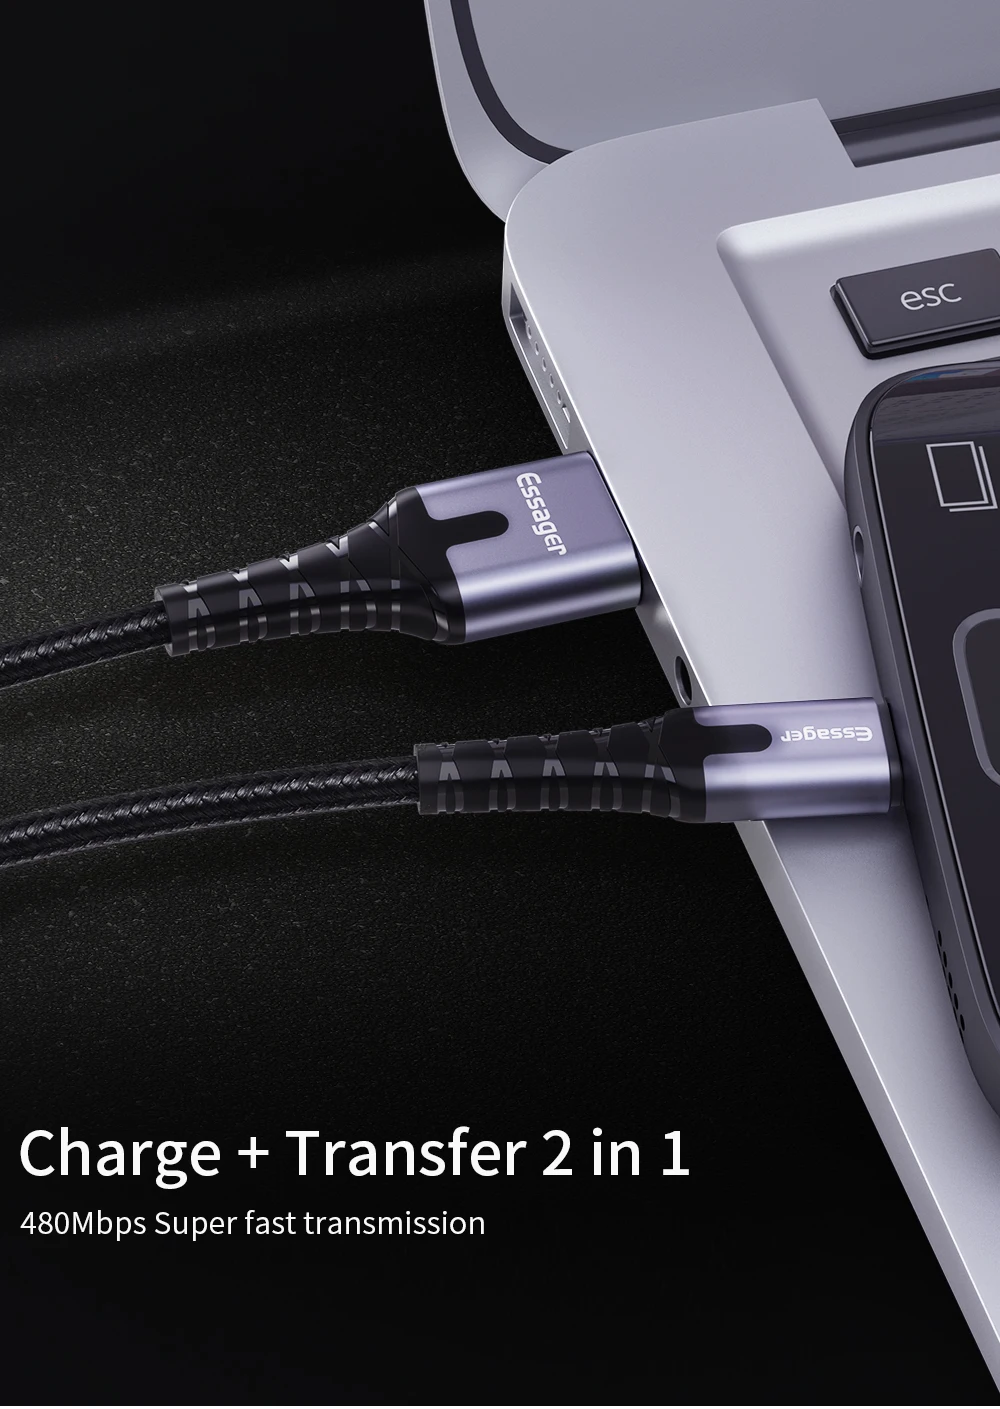 Essager светодиодный Micro USB кабель для быстрой зарядки и передачи данных провод шнур 2m 3M USB зарядное устройство через Micro USB кабель для samsung Xiaomi LG Android мобильного телефона